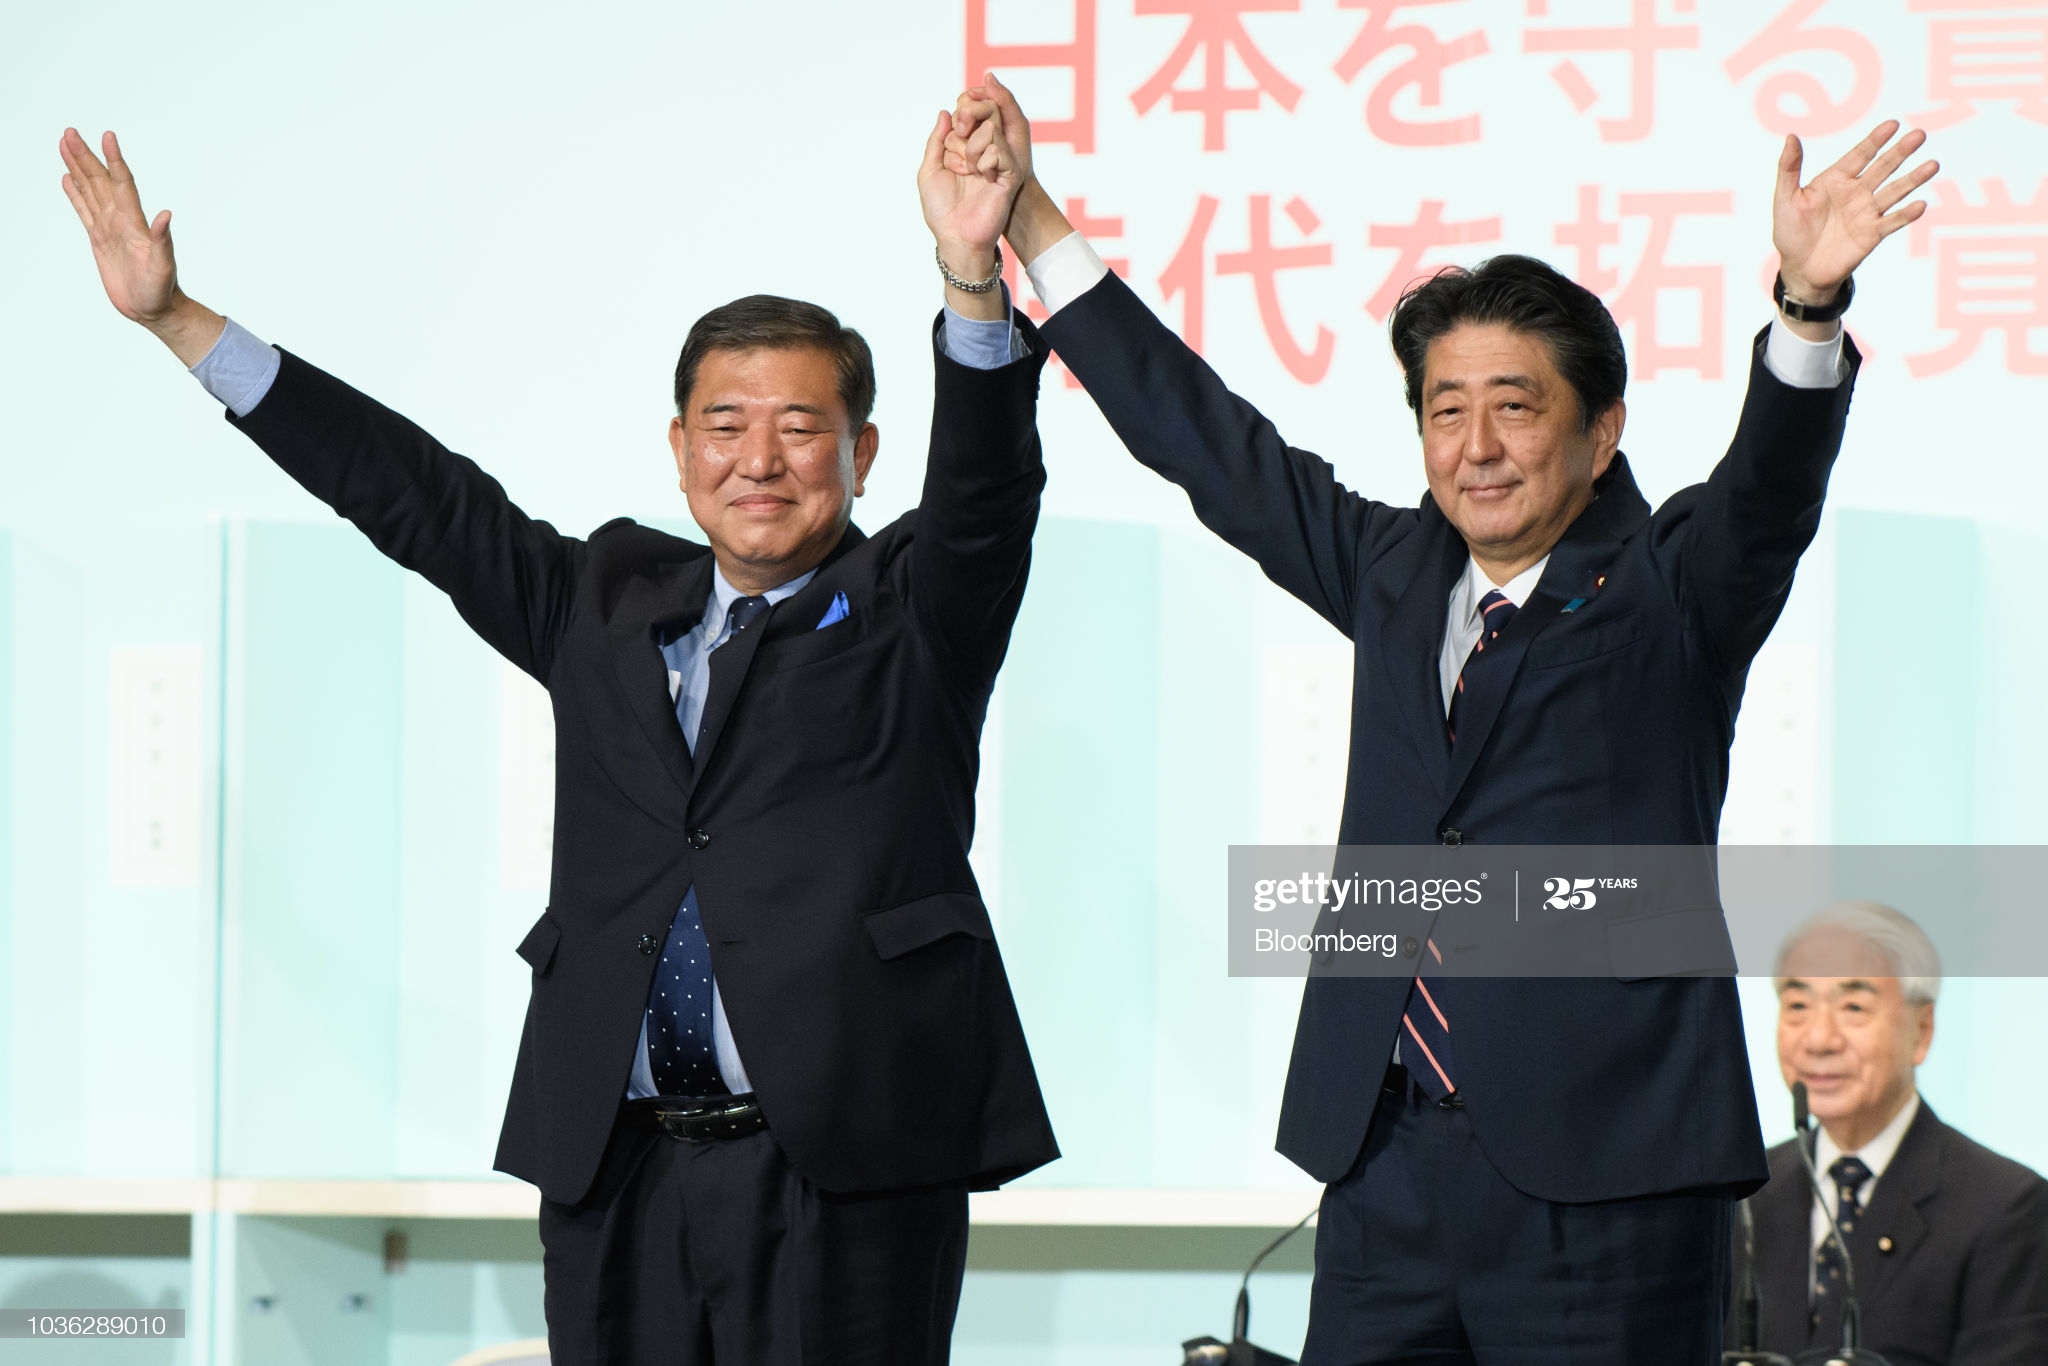 Ngày 14-9, đảng cầm quyền Nhật Bản bầu lãnh đạo mới